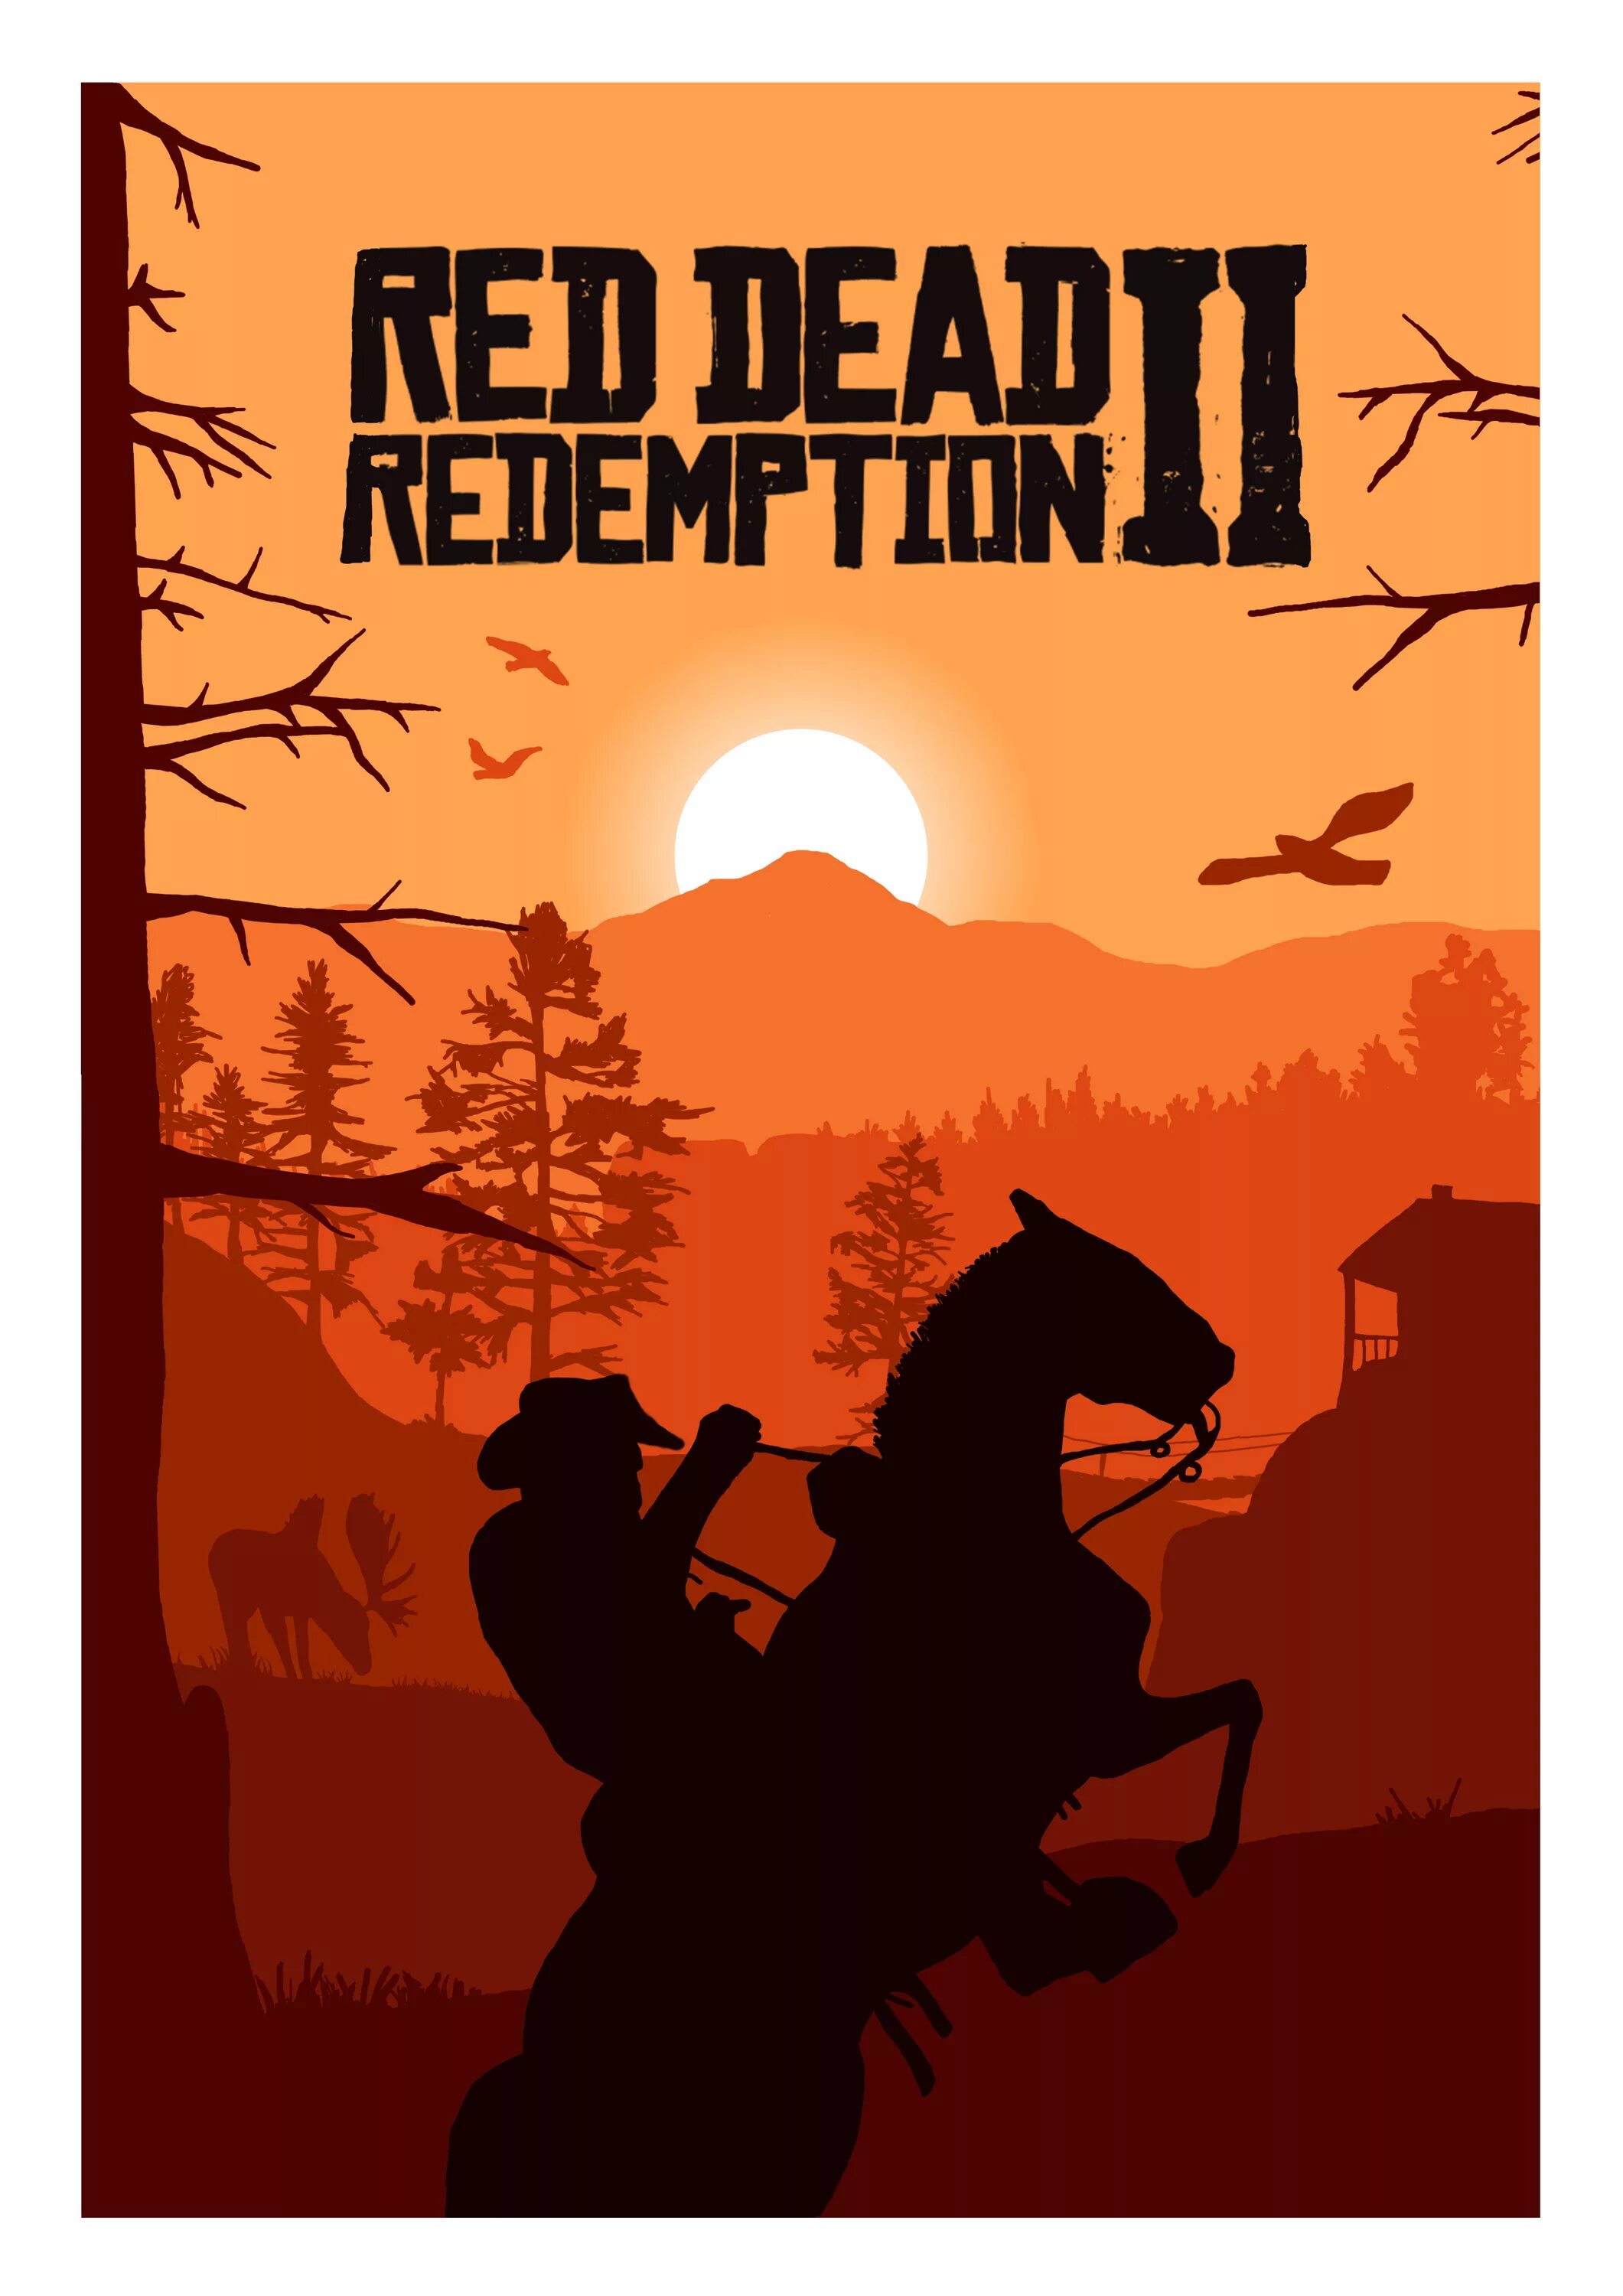 Рдр 2 плакат. Постер ред дед редемпшн 2. Red Dead Redemption 1 Постер. Ред деад редемптион 2 плакат.